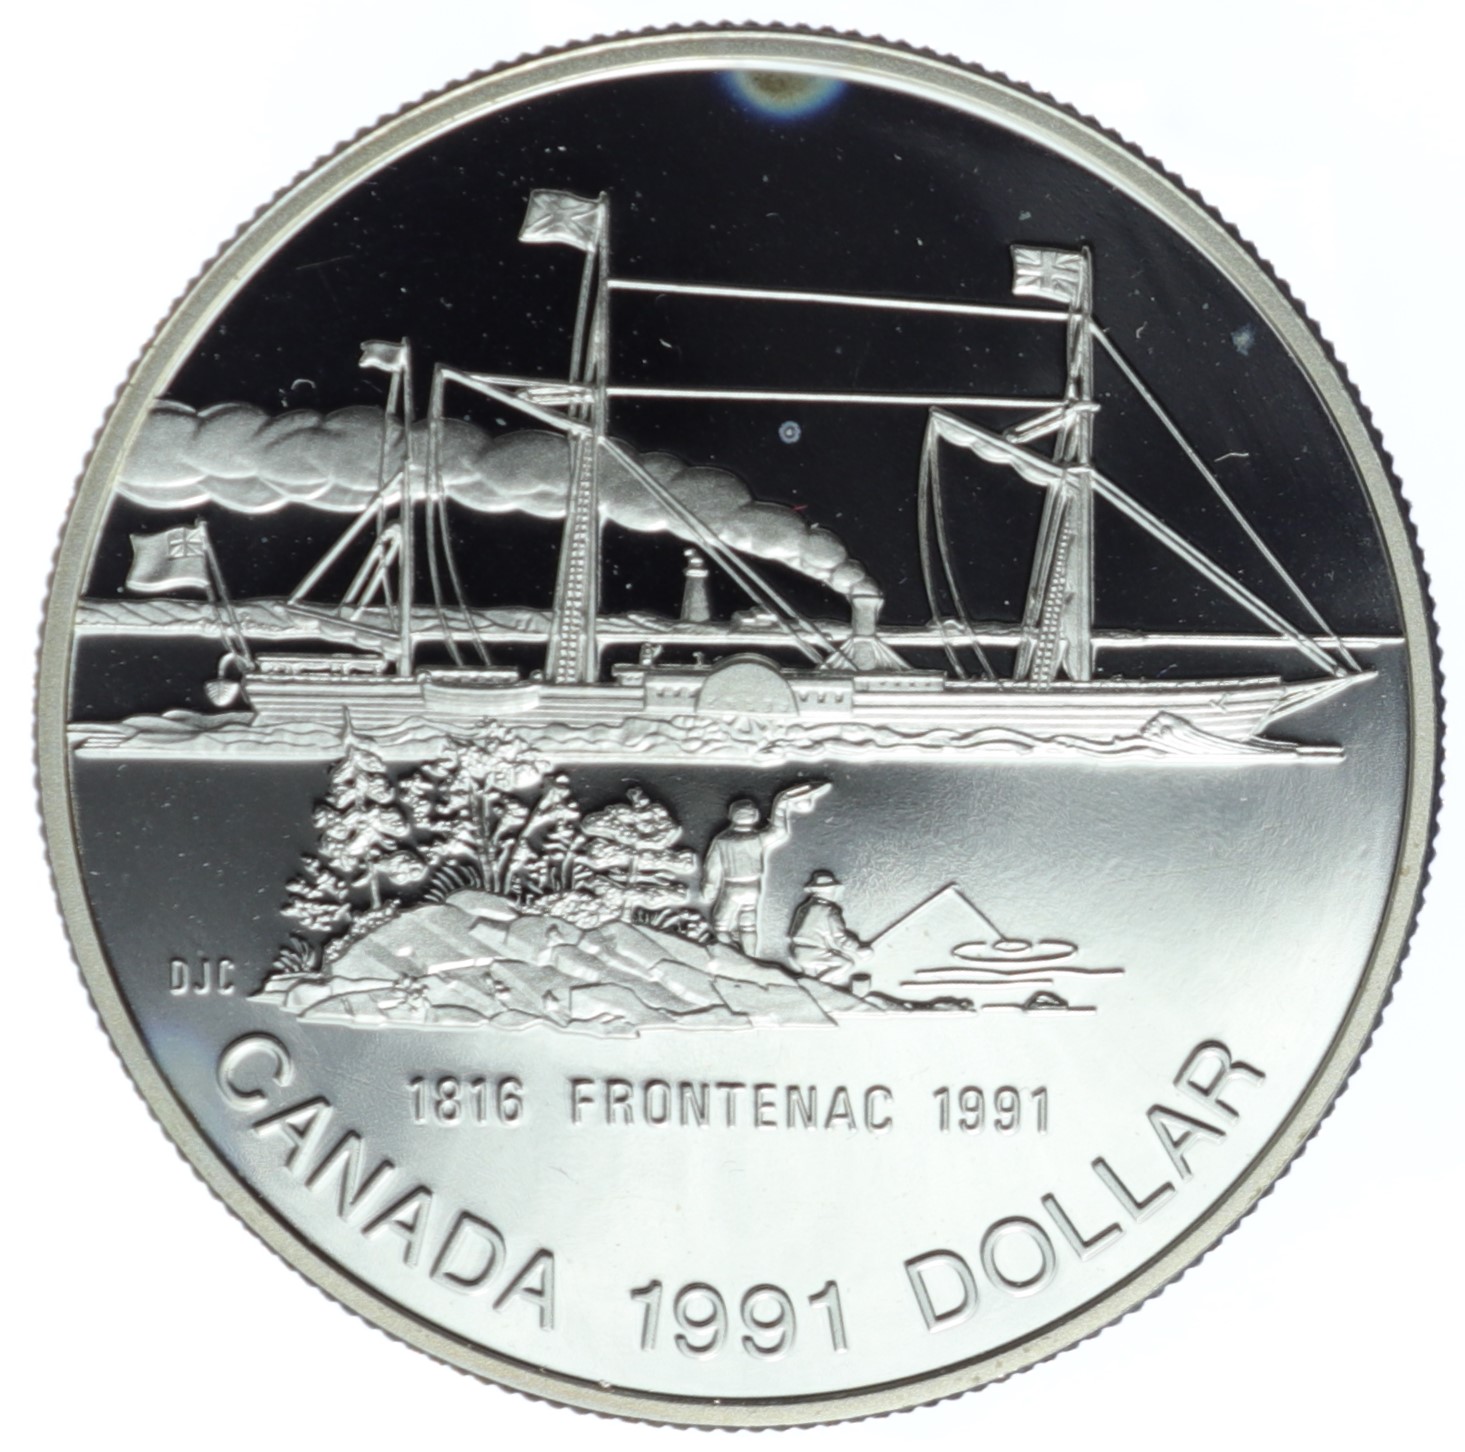 1 dolar - 175 rocznica - Parowiec „Frontenac” - Kanada - 1991 r